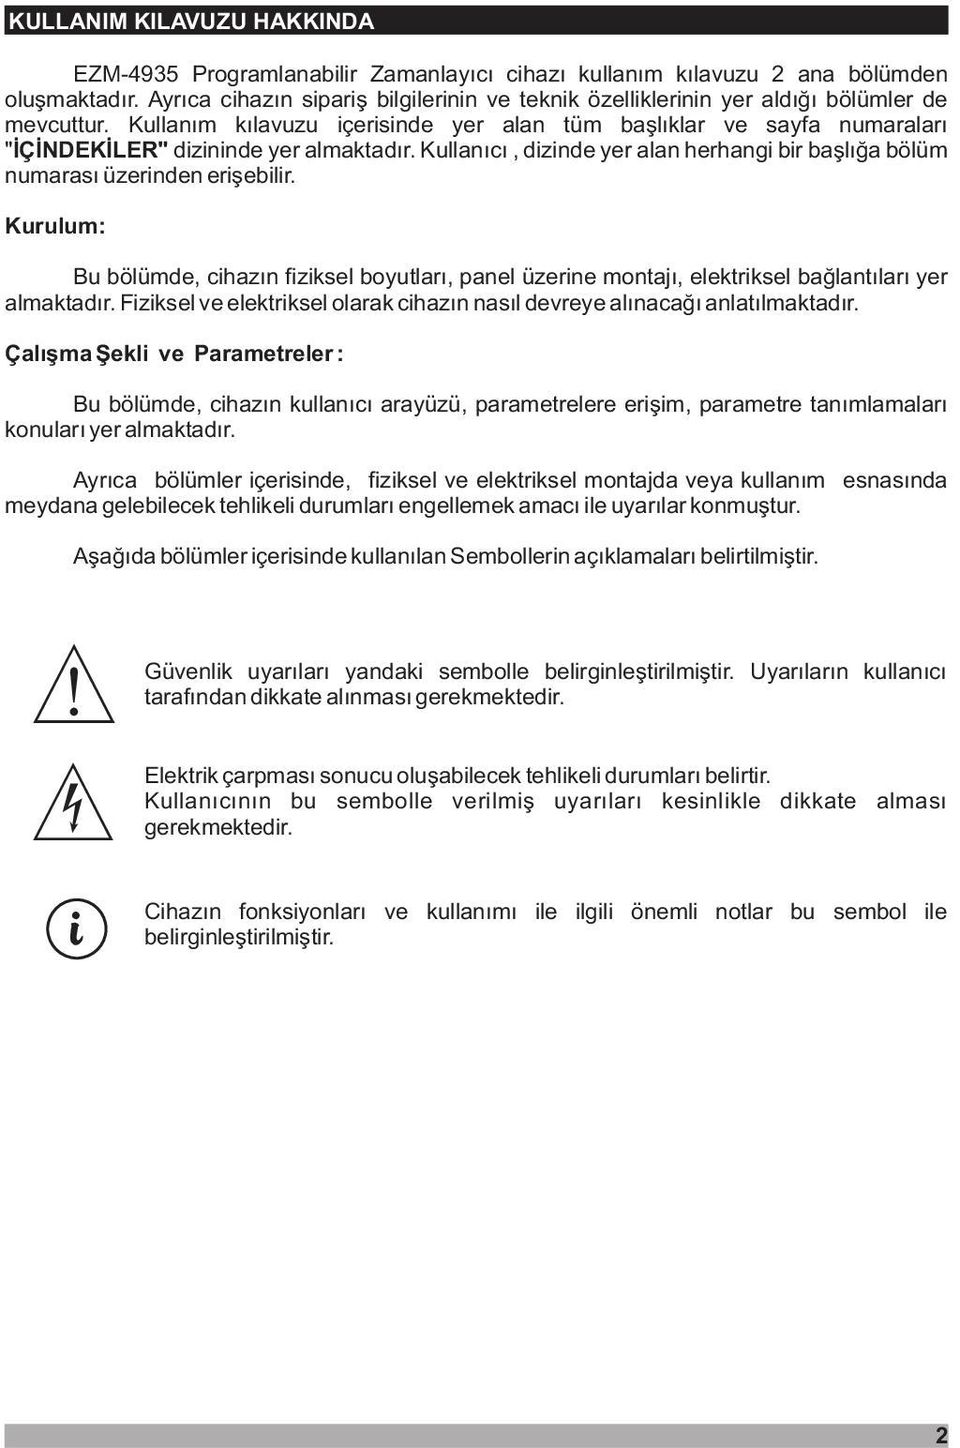 Kullaným kýlavuzu içerisinde yer alan tüm baþlýklar ve sayfa numaralarý " ÝÇÝNDEKÝLER" dizininde yer almaktadýr. Kullanýcý, dizinde yer alan herhangi bir baþlýða bölüm numarasý üzerinden eriþebilir.